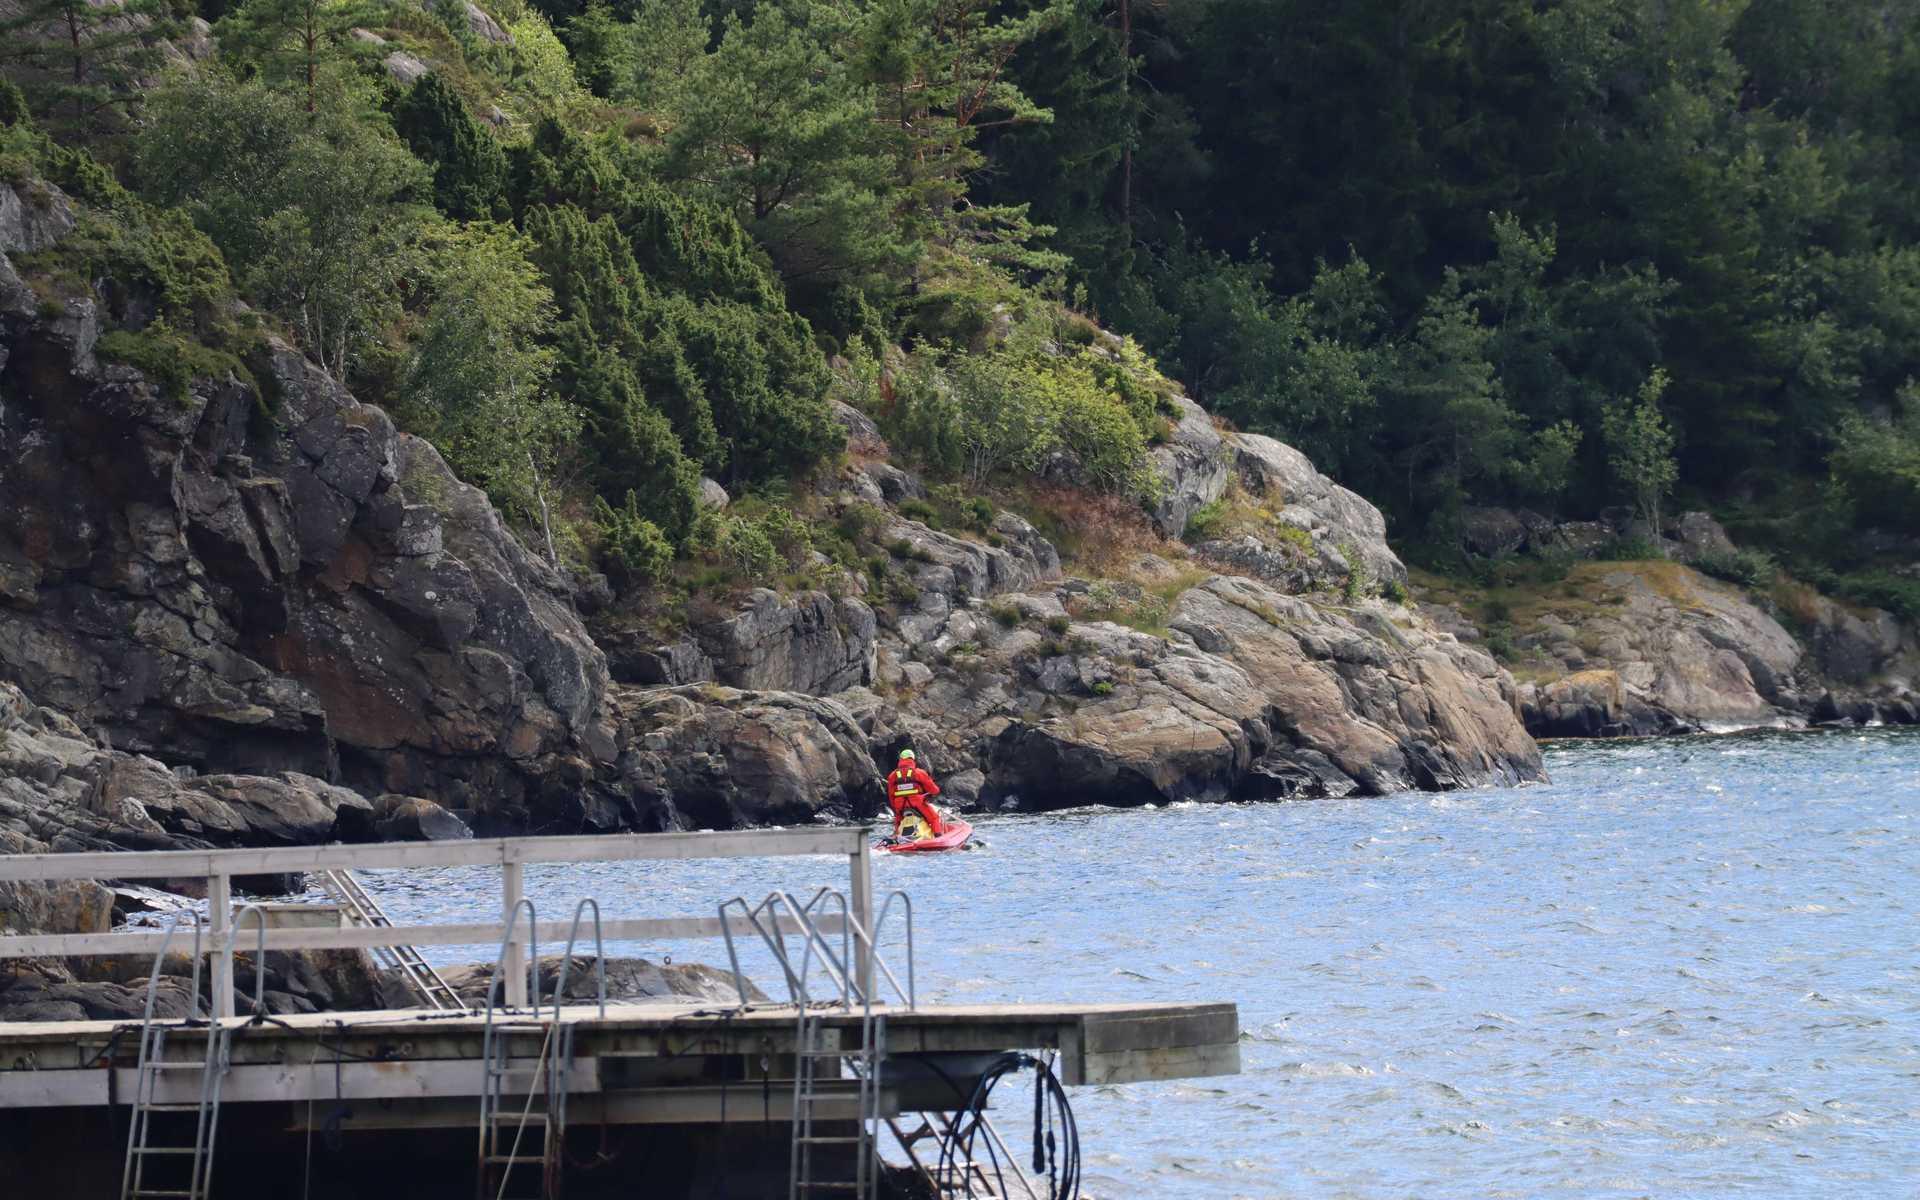 Stor sökinsats pågick i Gullmarsfjorden efter försvunna dykare på söndagen. En man hittades avliden och ytterligare en dykare är fortfarande försvunnen.